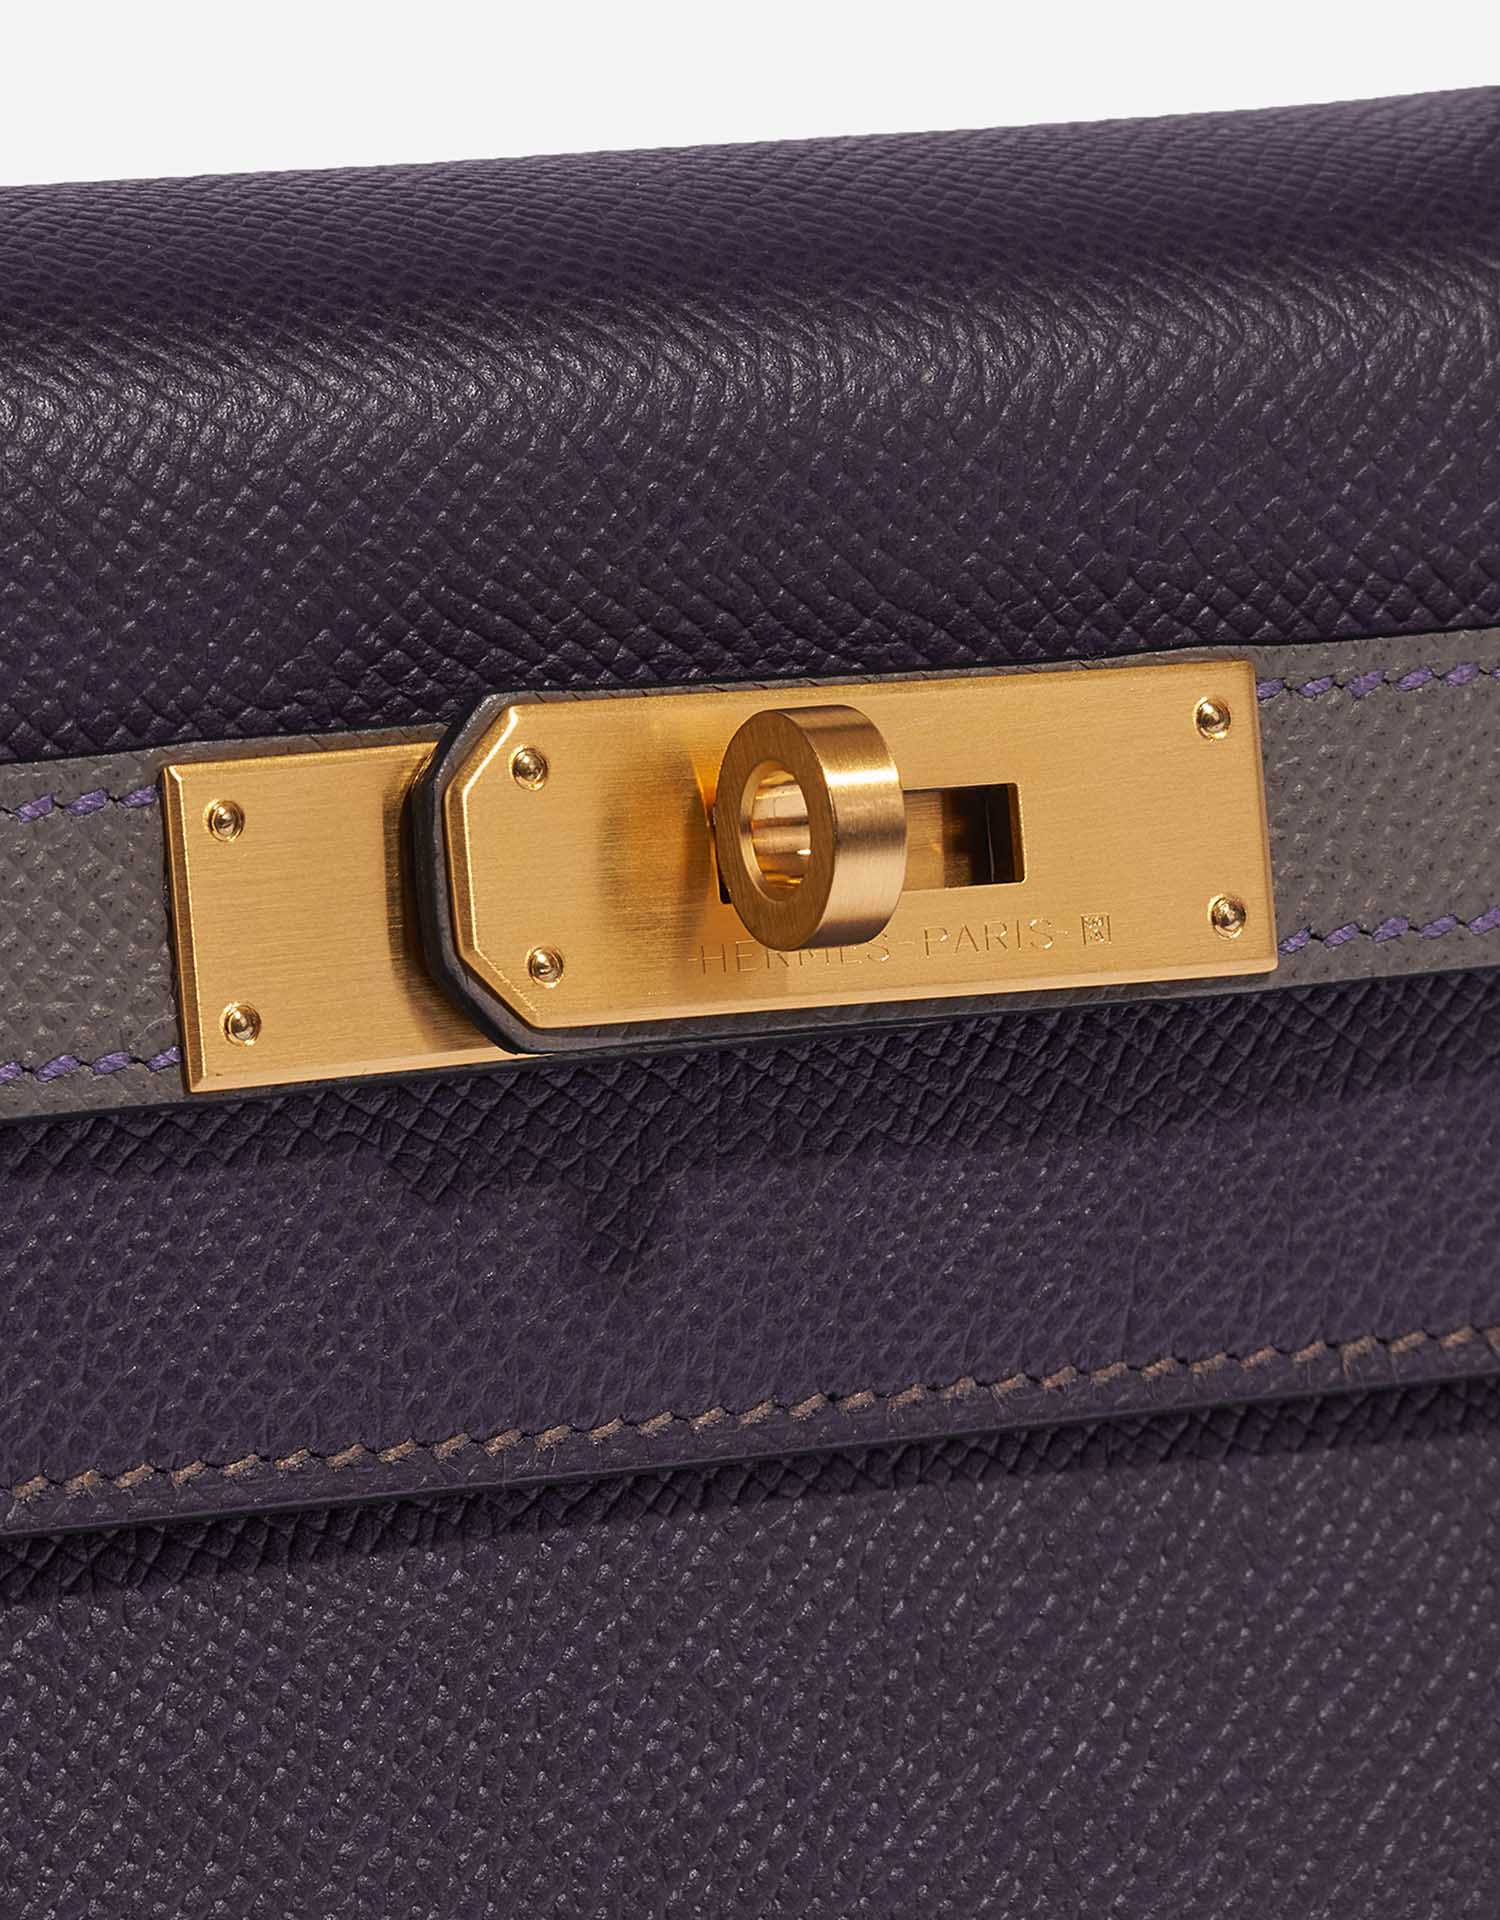 Pre-owned Hermès Tasche Kelly HSS 28 Epsom Raisin / Gris Etain Grey Closing System | Verkaufen Sie Ihre Designer-Tasche auf Saclab.com